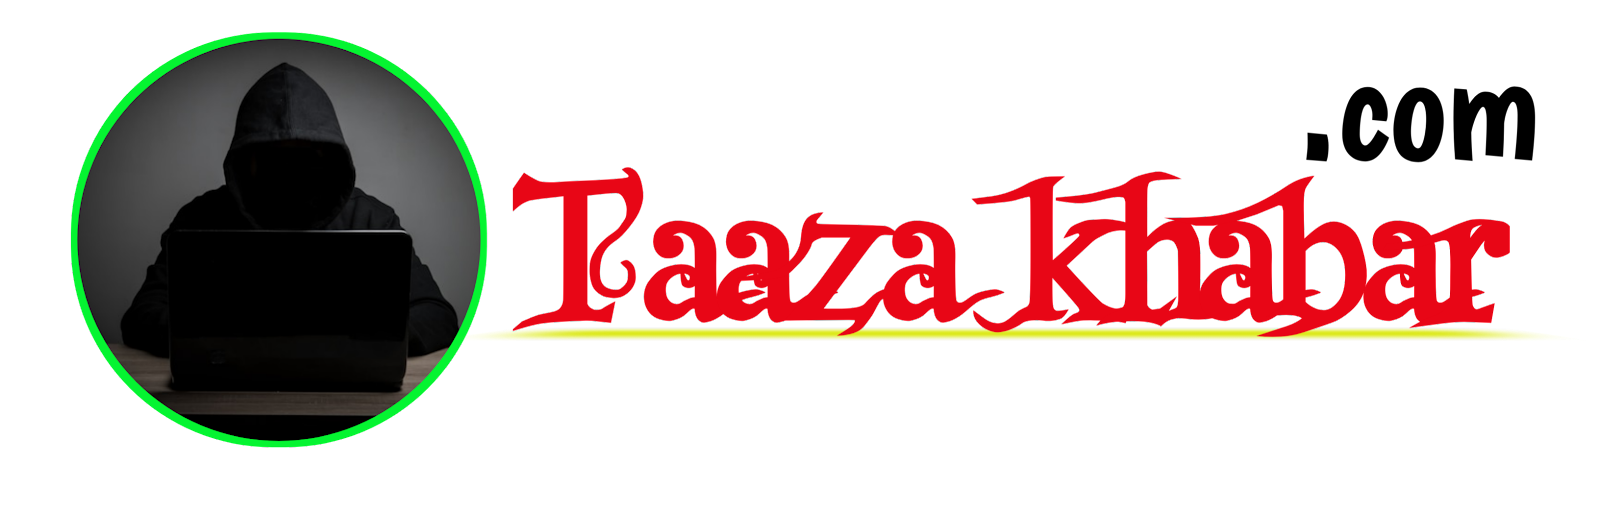 Taaza khabar 12.com